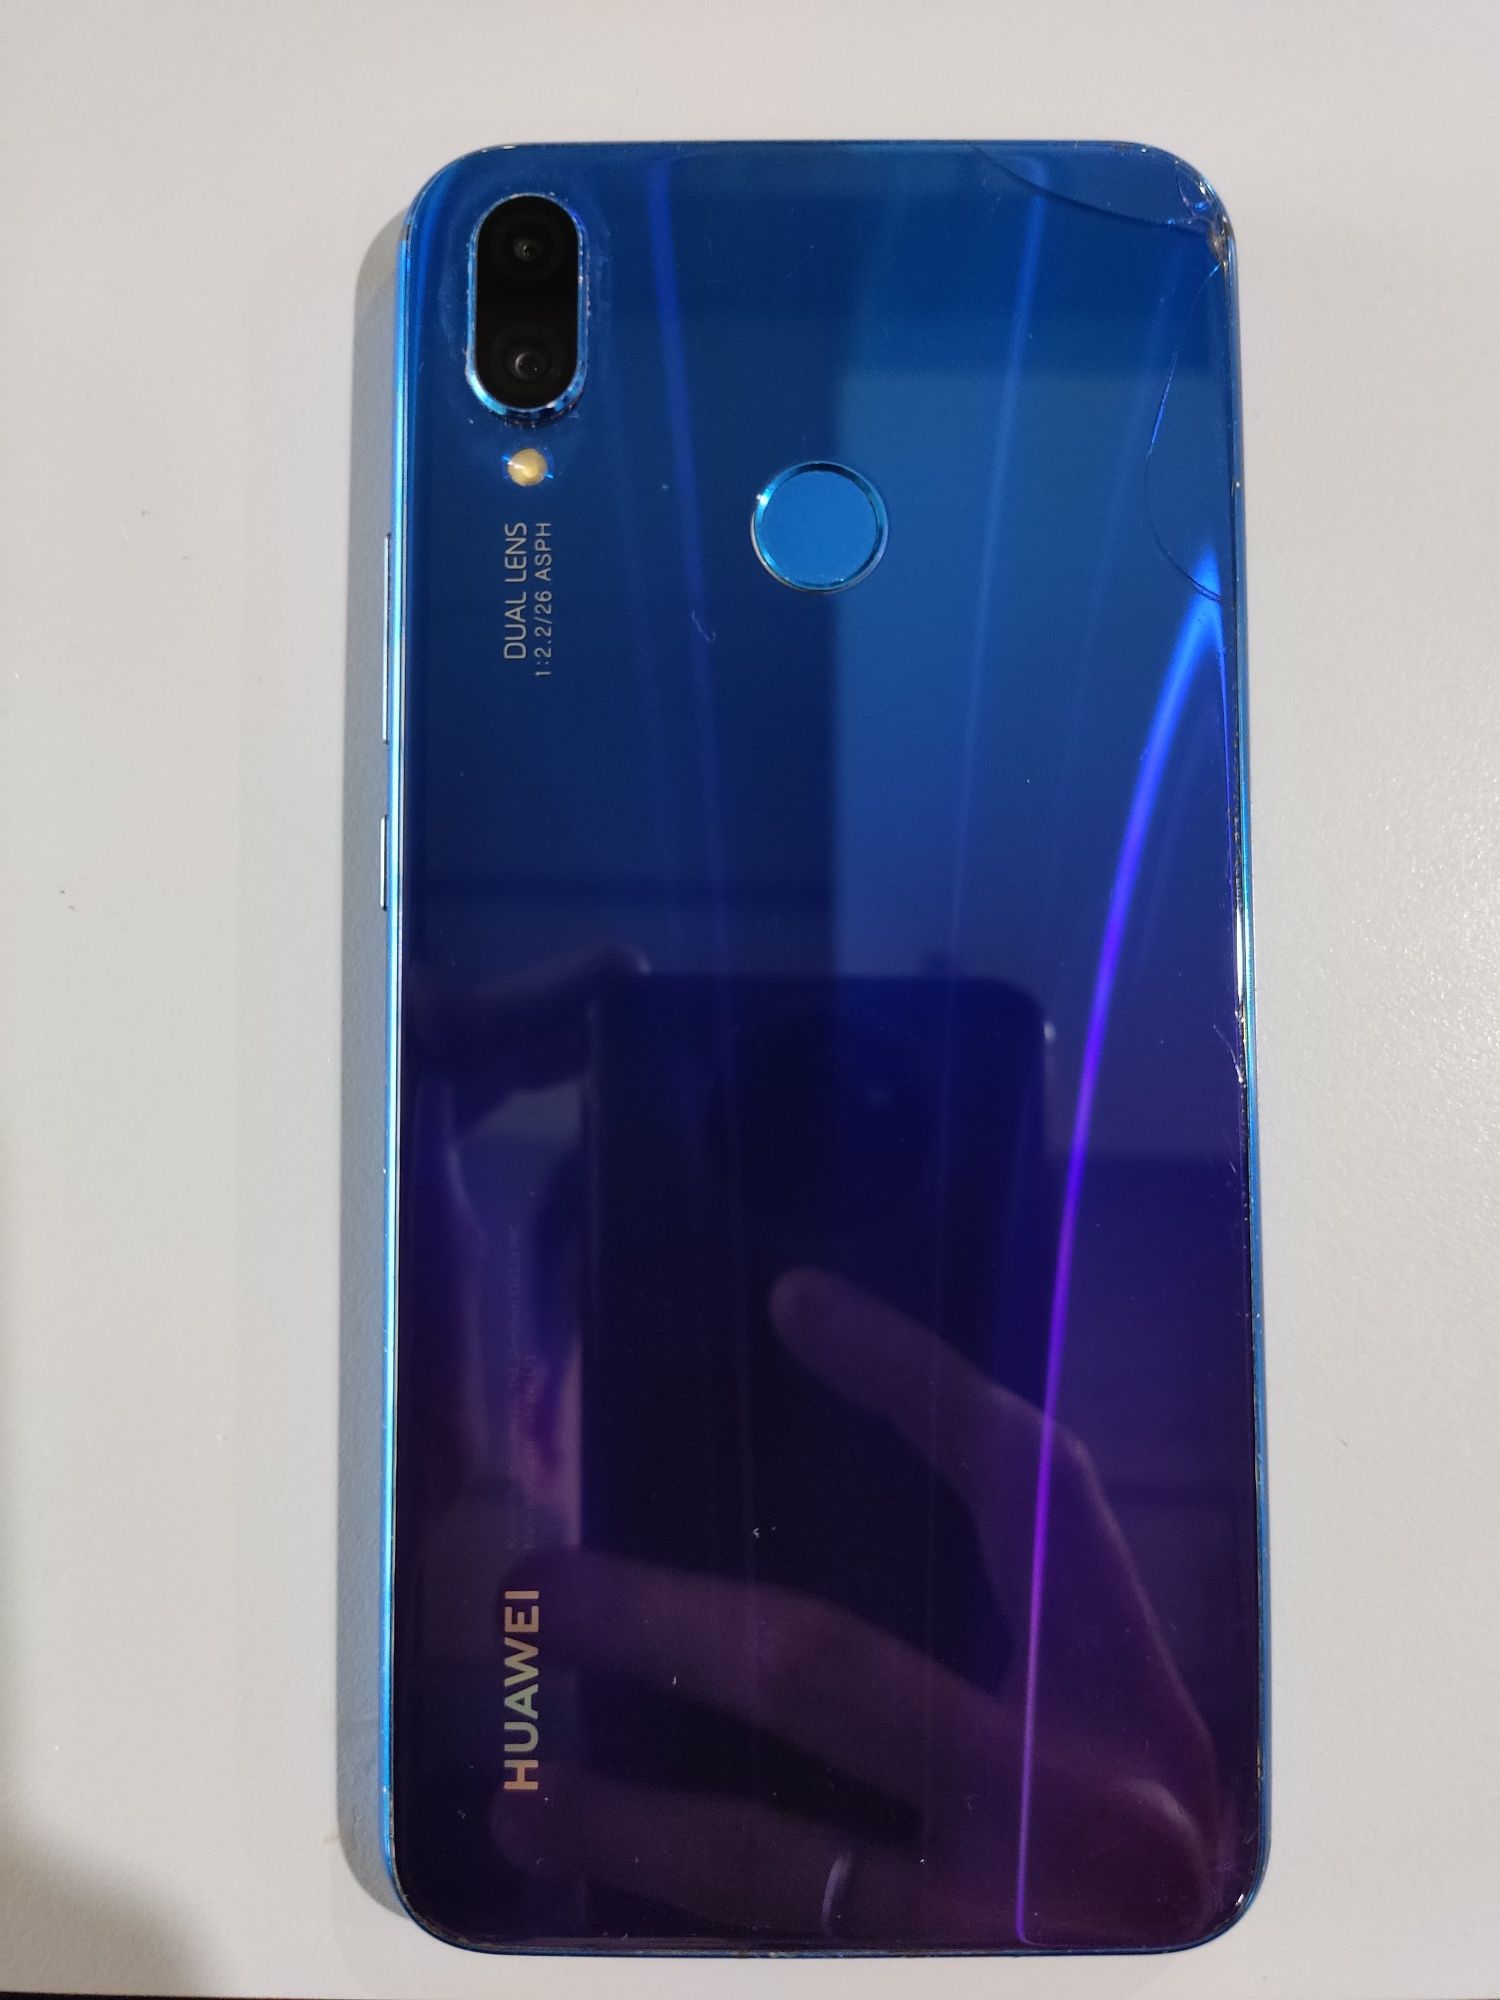 Huawei p smart + 2019